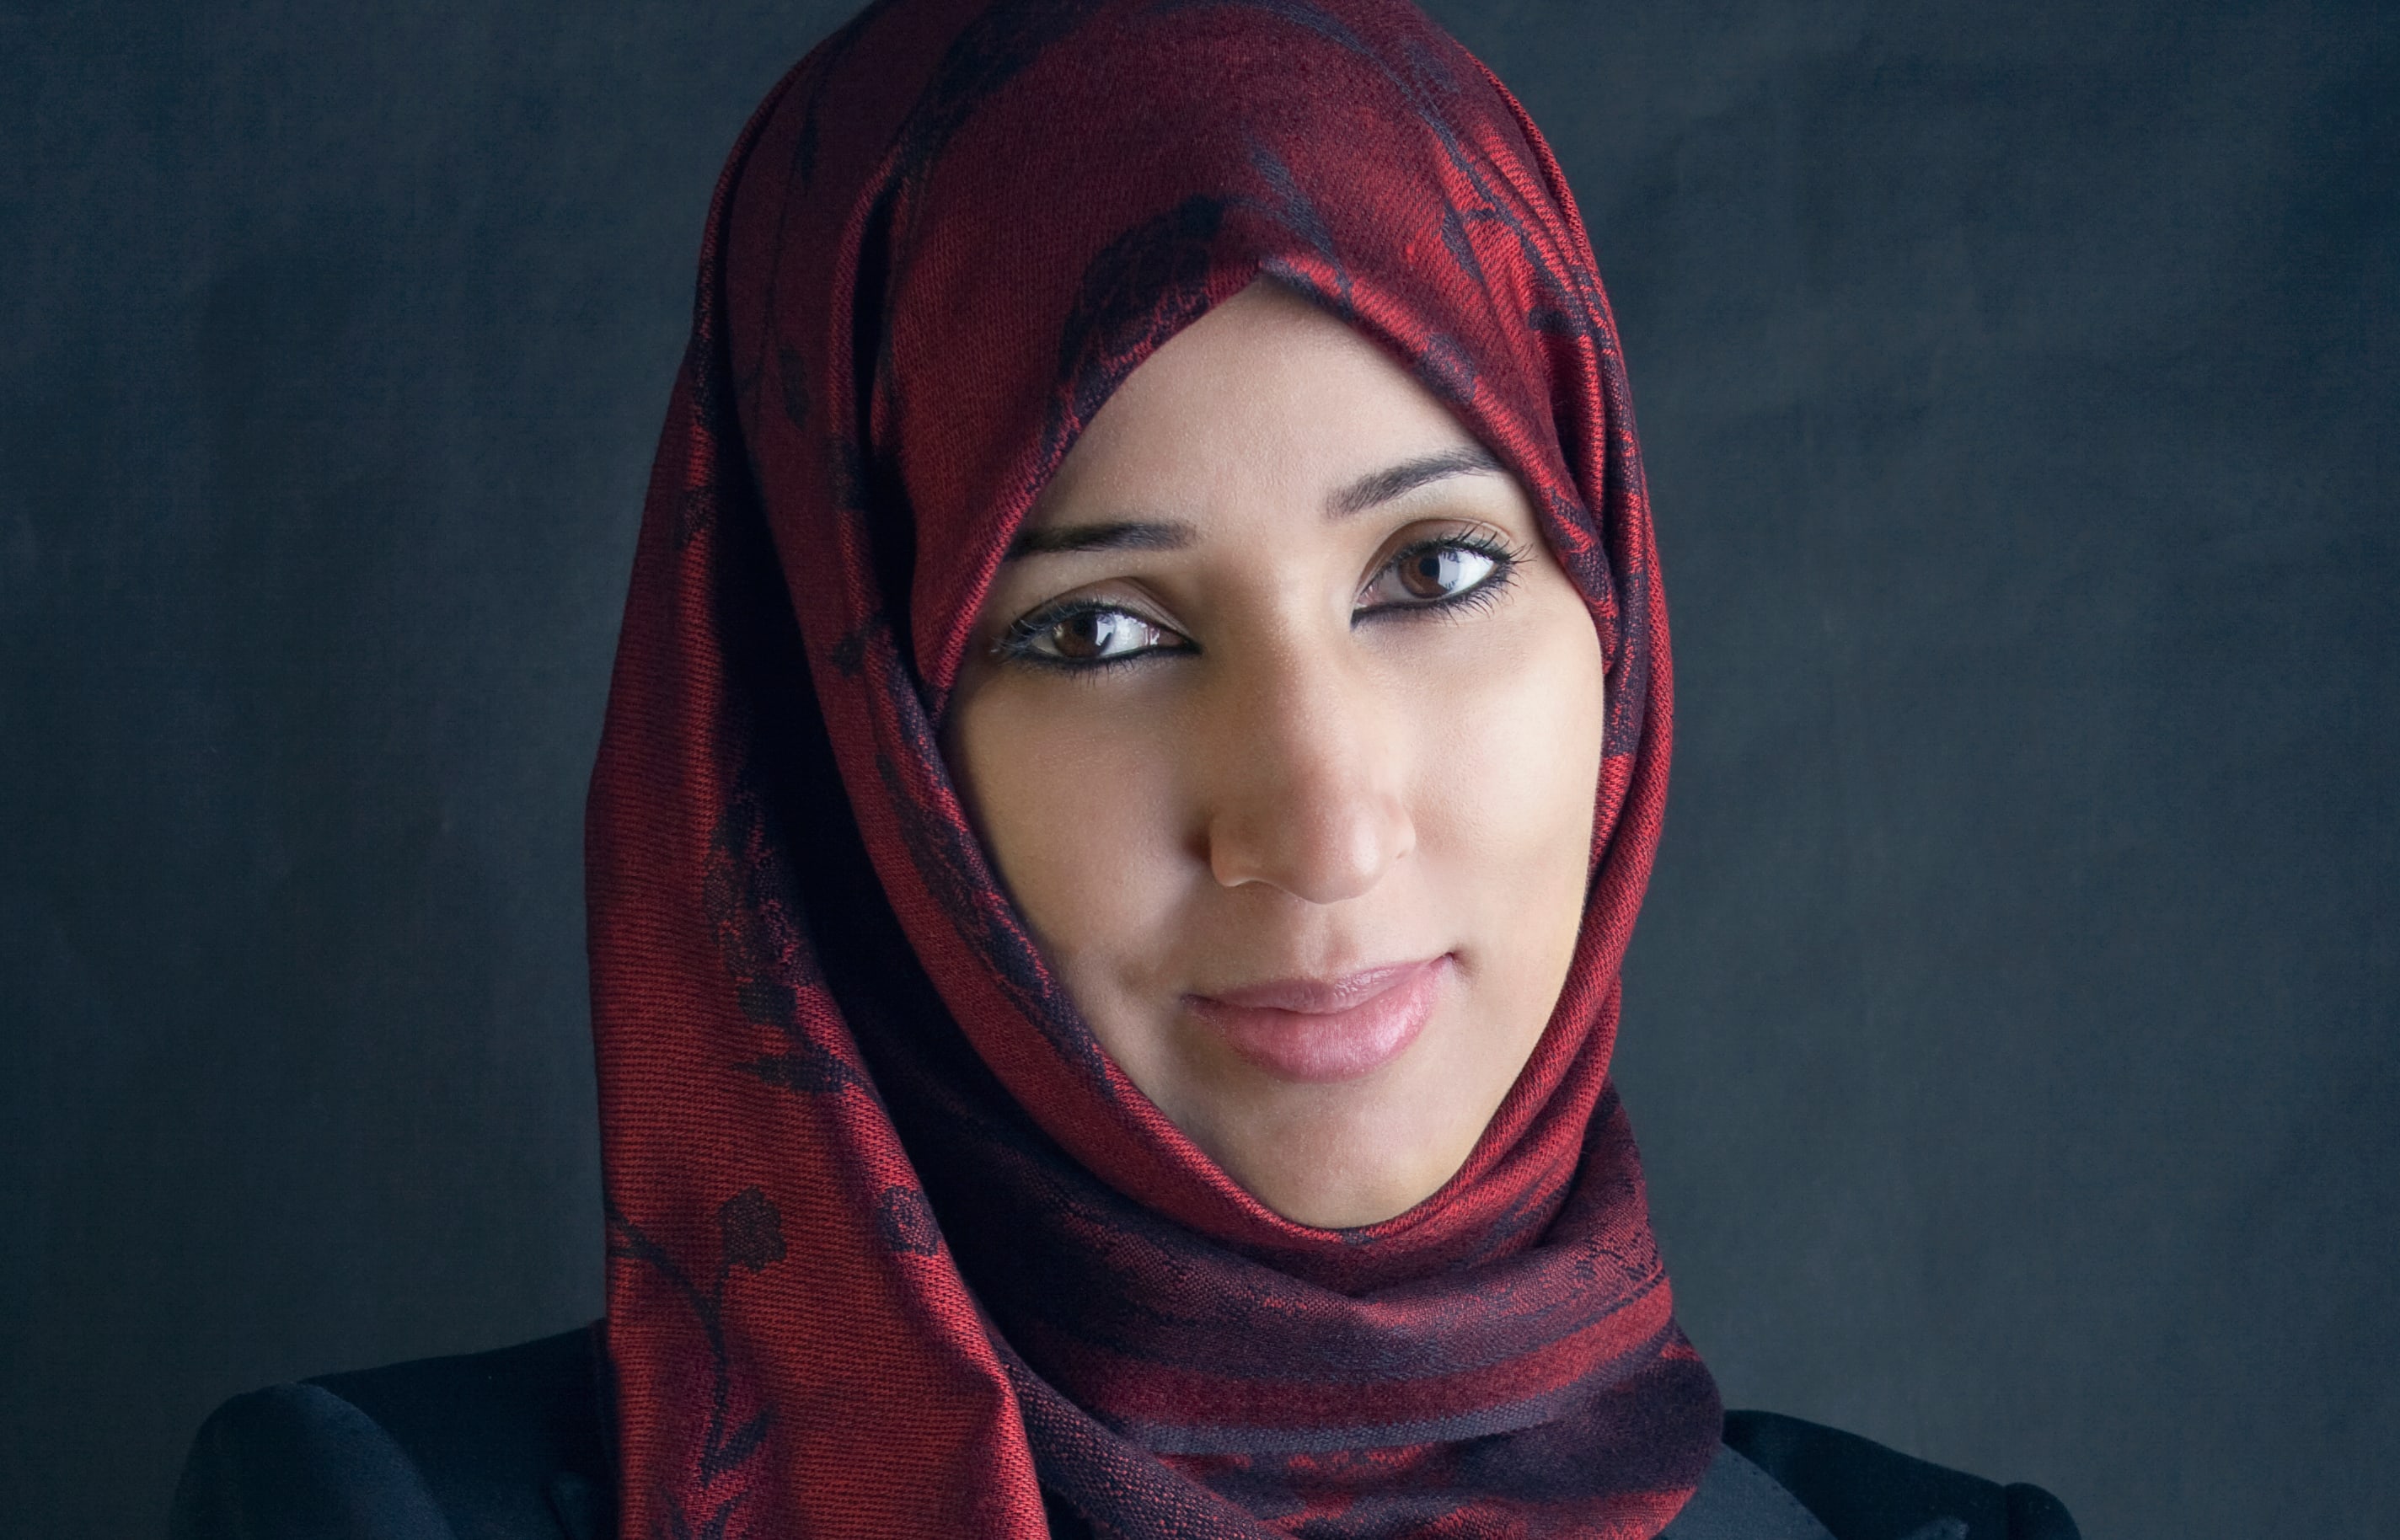 Manal al-Shraif